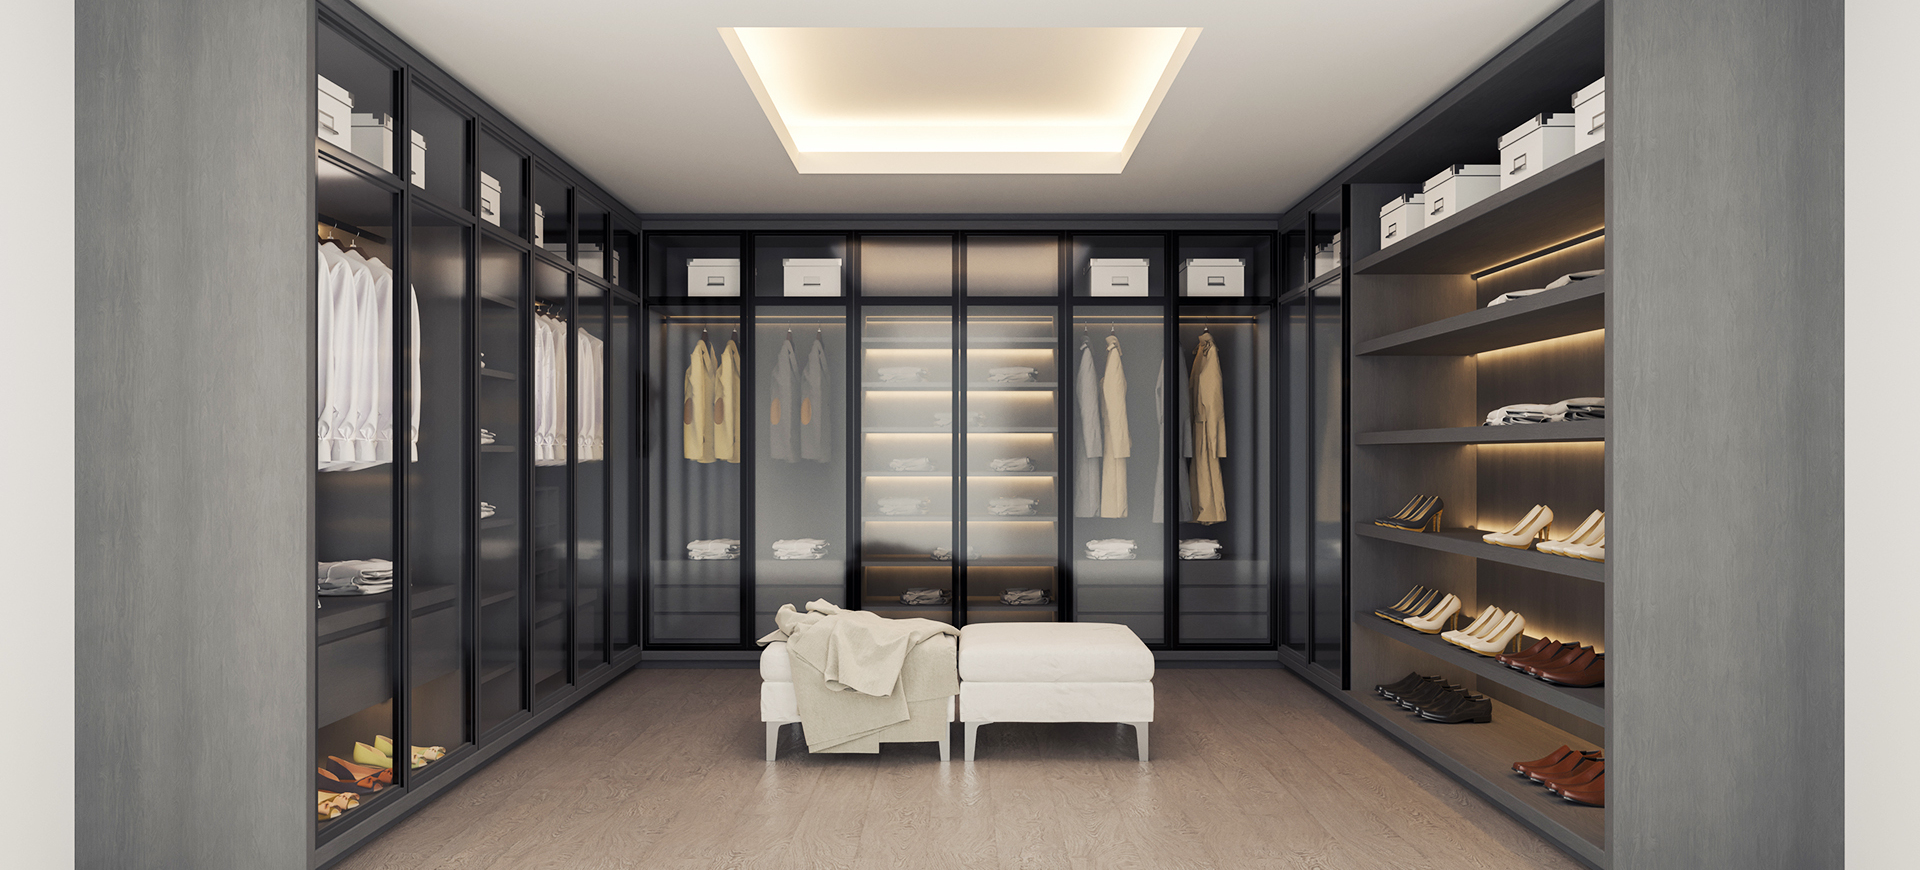 Großes Ankleidezimmer mit deckenhohen Kleiderschränken aus grau-lackiertem Echtholz mit hochwertigen Glastüren